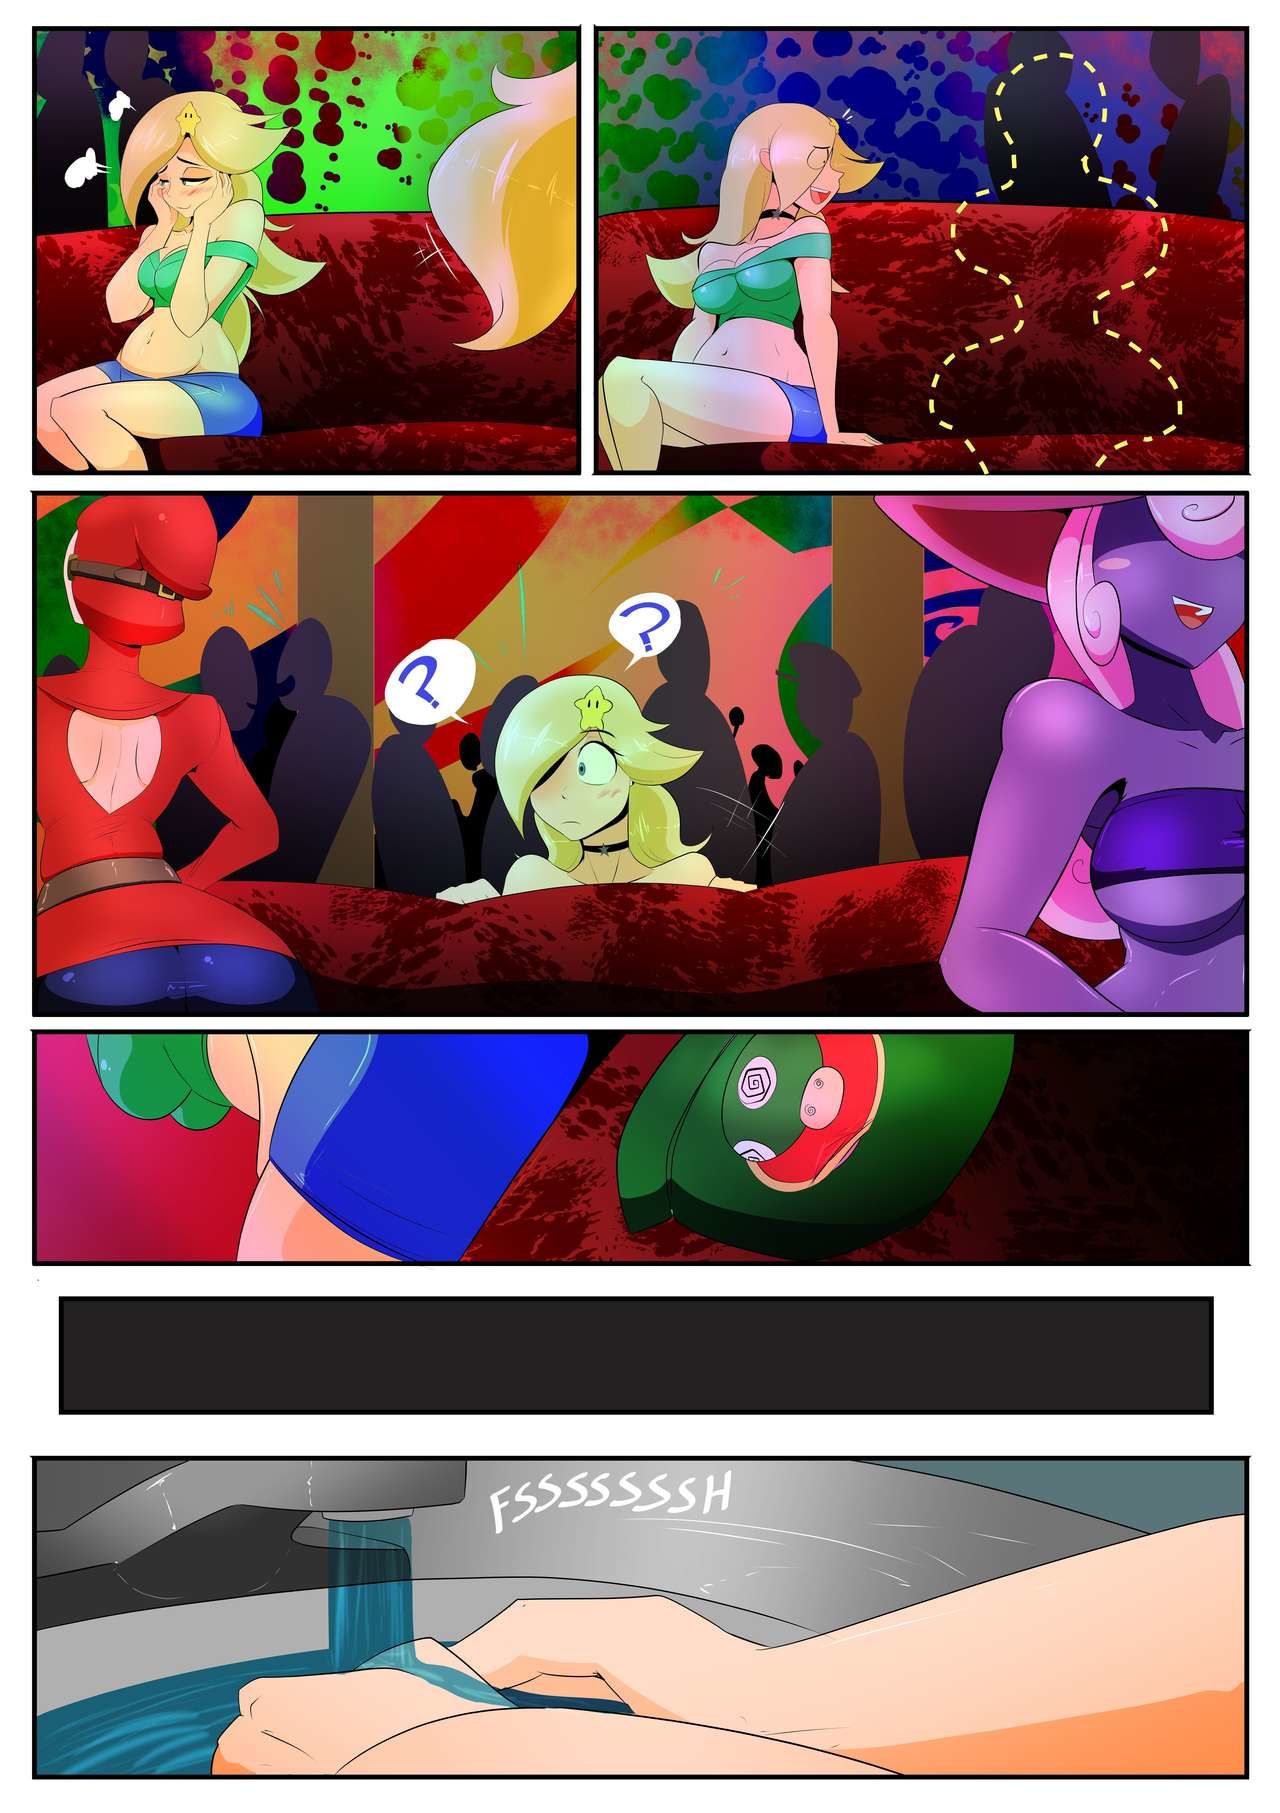 Party - Vale-City (Super Mario Bros.) page 3